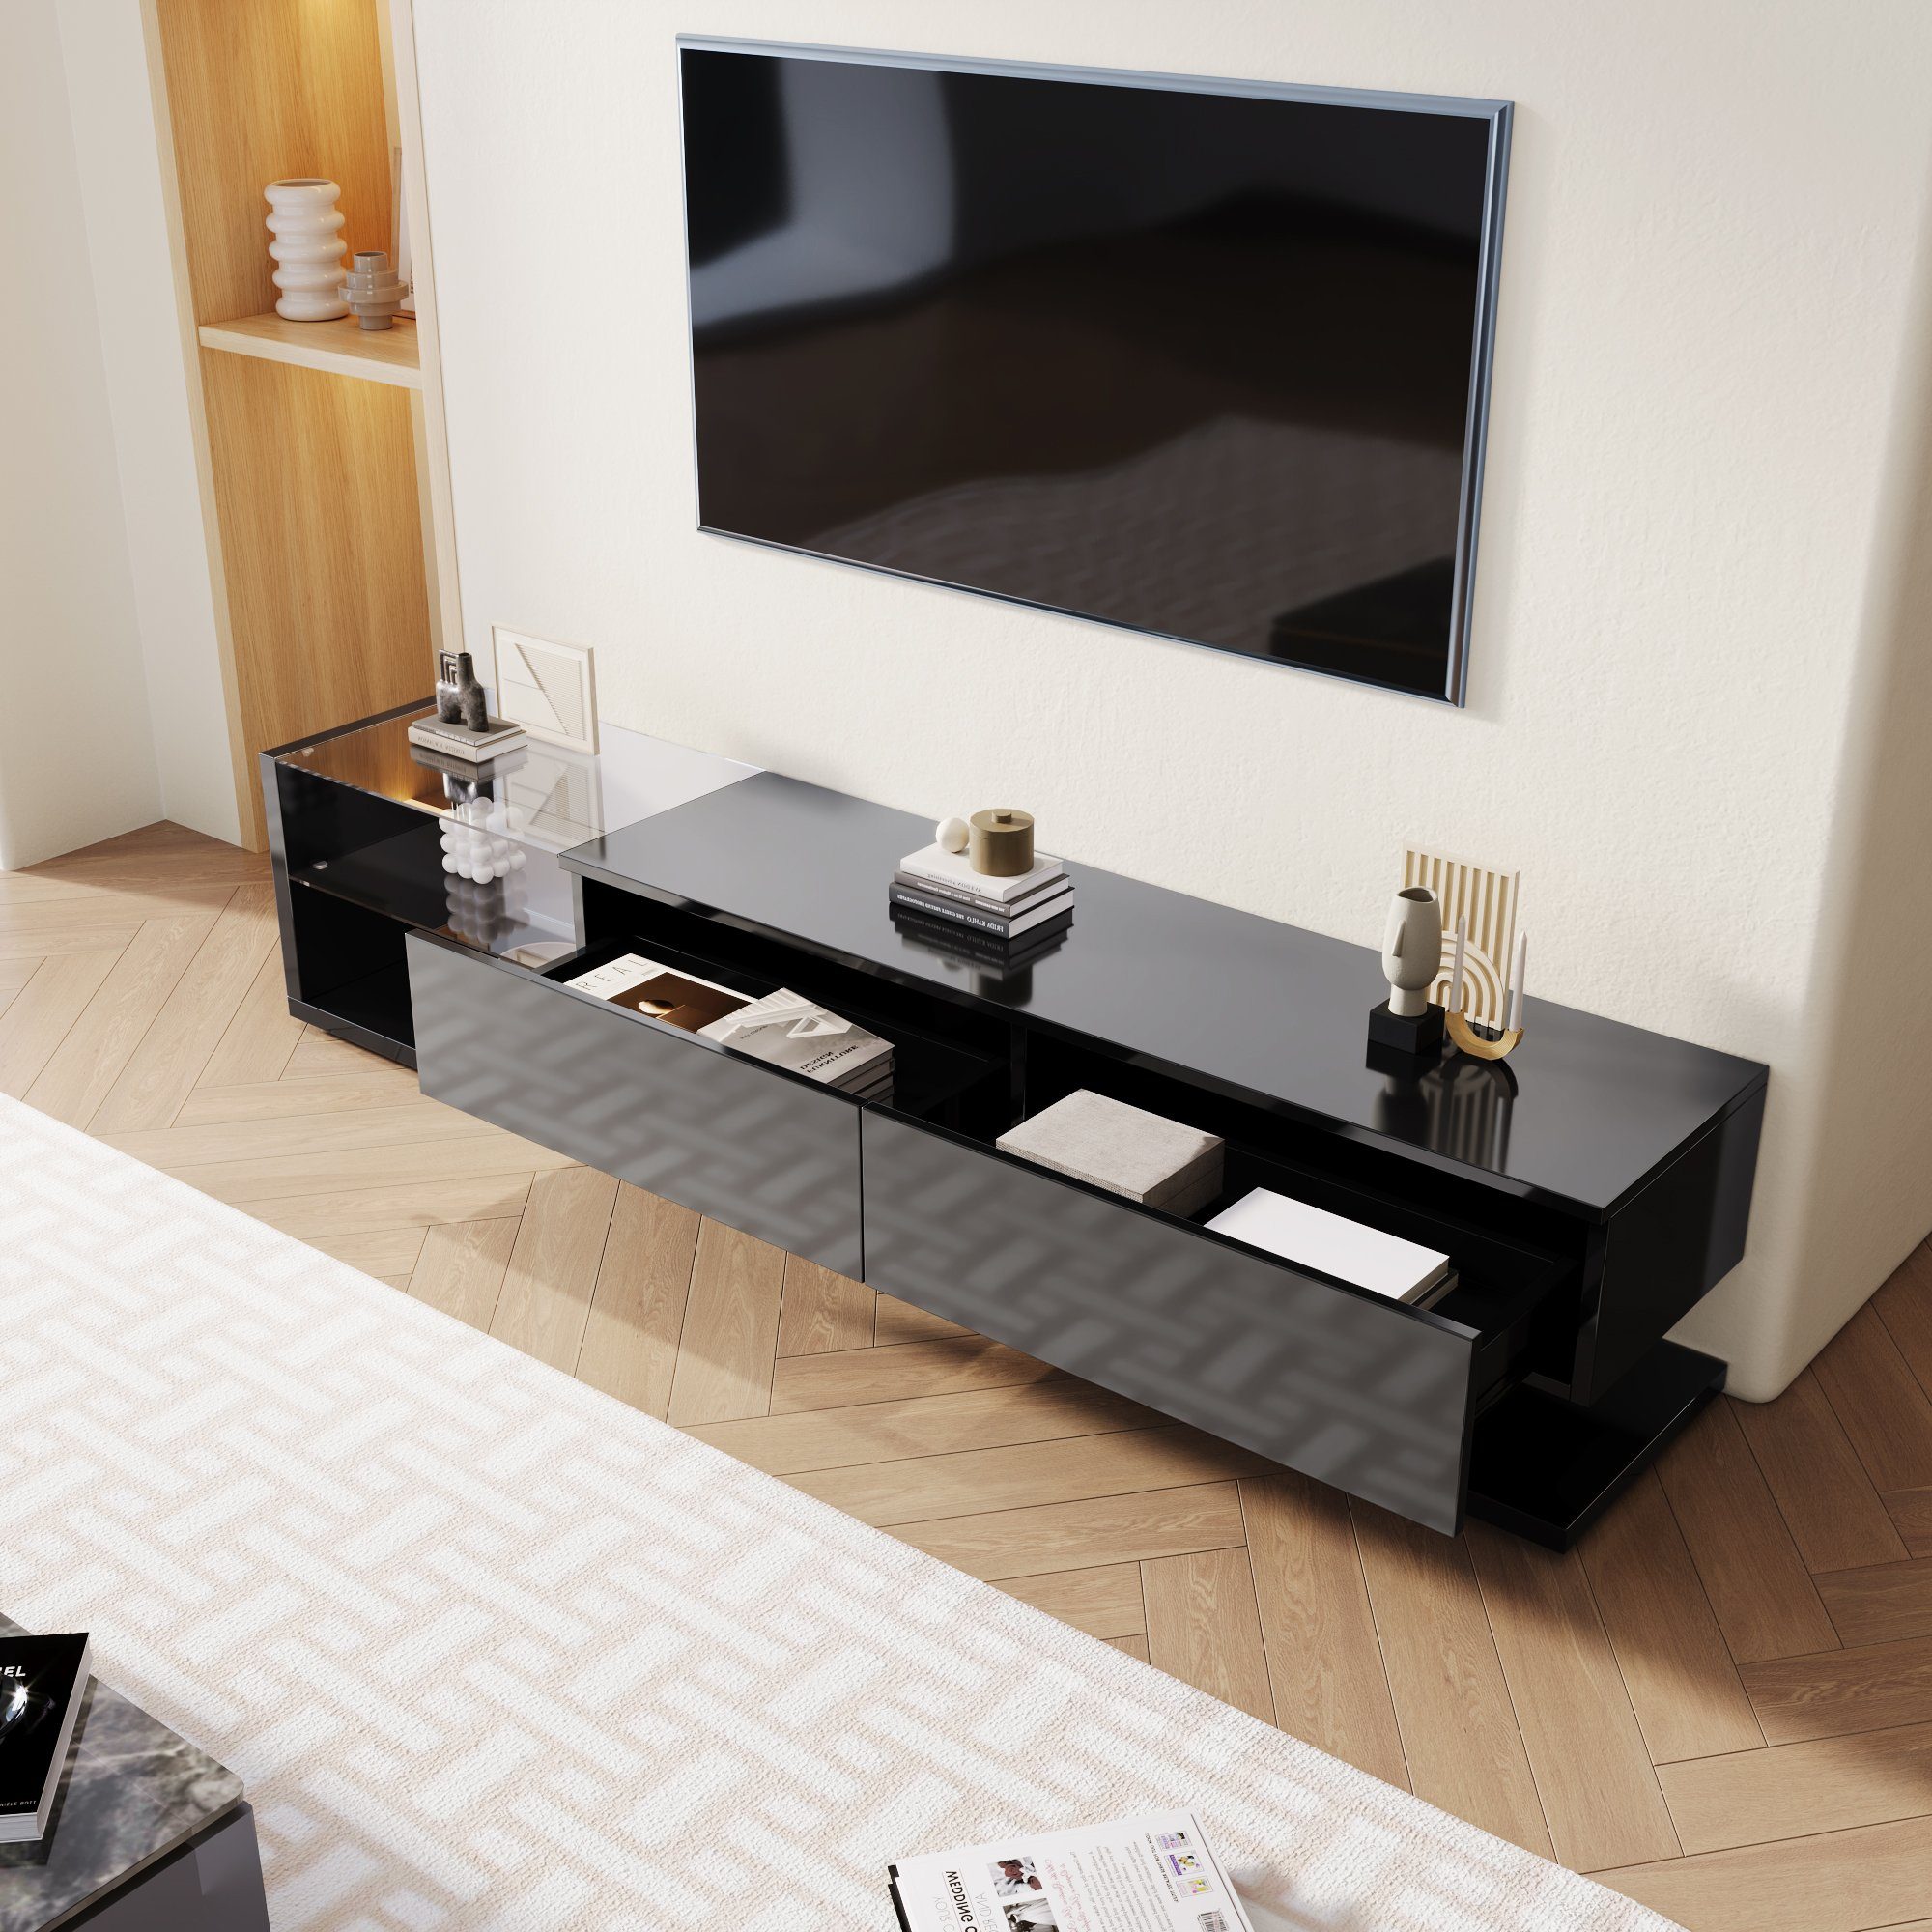 EXTSUD TV-Schrank TV-Schränke, Lowboards, Hochglanz-Wohnzimmermöbel verbindet natürlichen, rustikalen Stil mit modernem Design schwarz